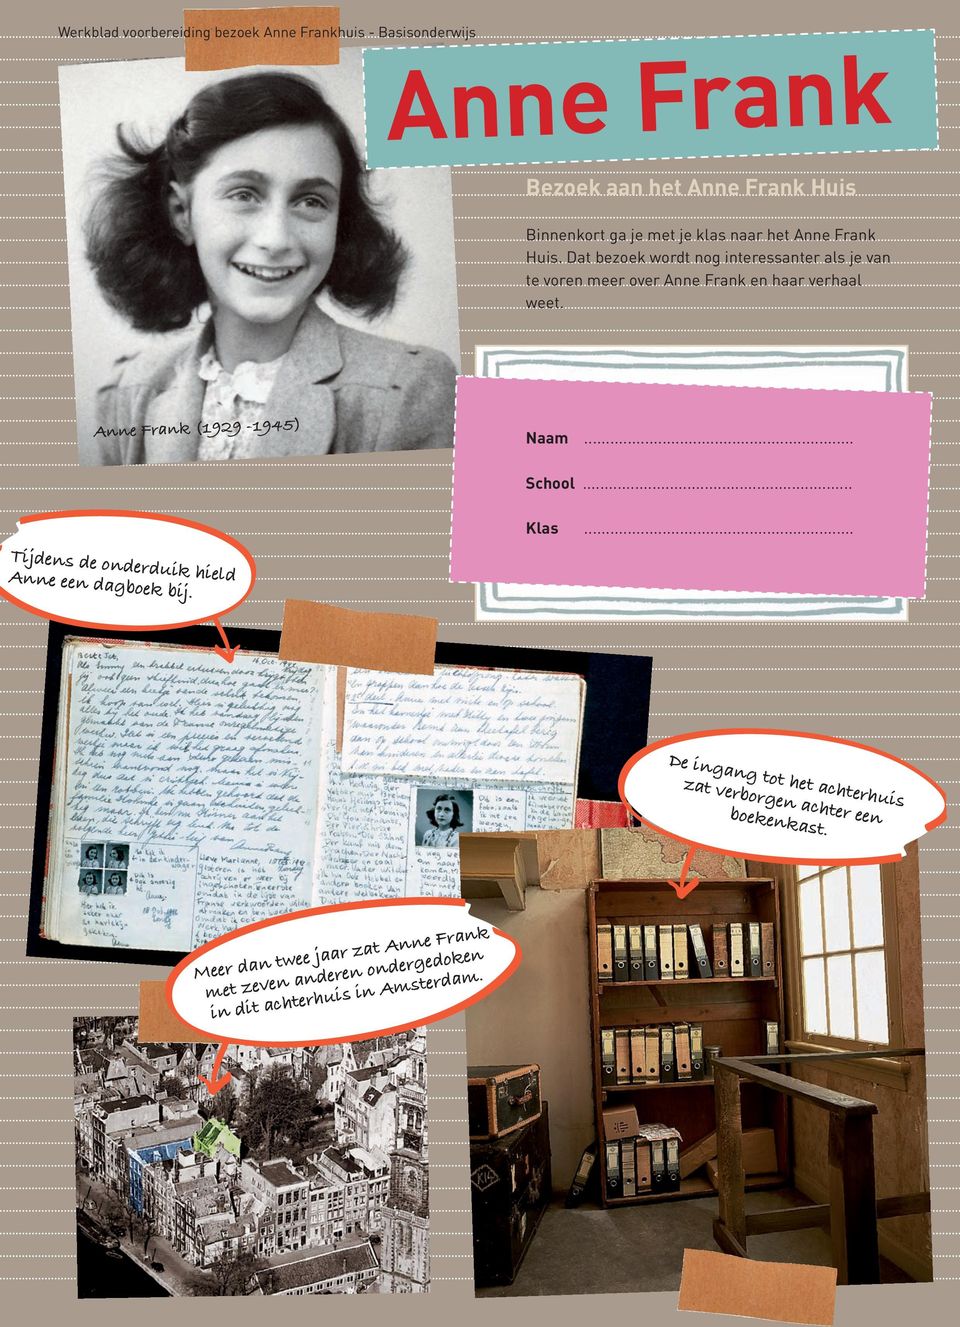 Anne Frank (1929 1945) Naam... School... Klas... Tijdens de onderduik hield Anne een dagboek bij.